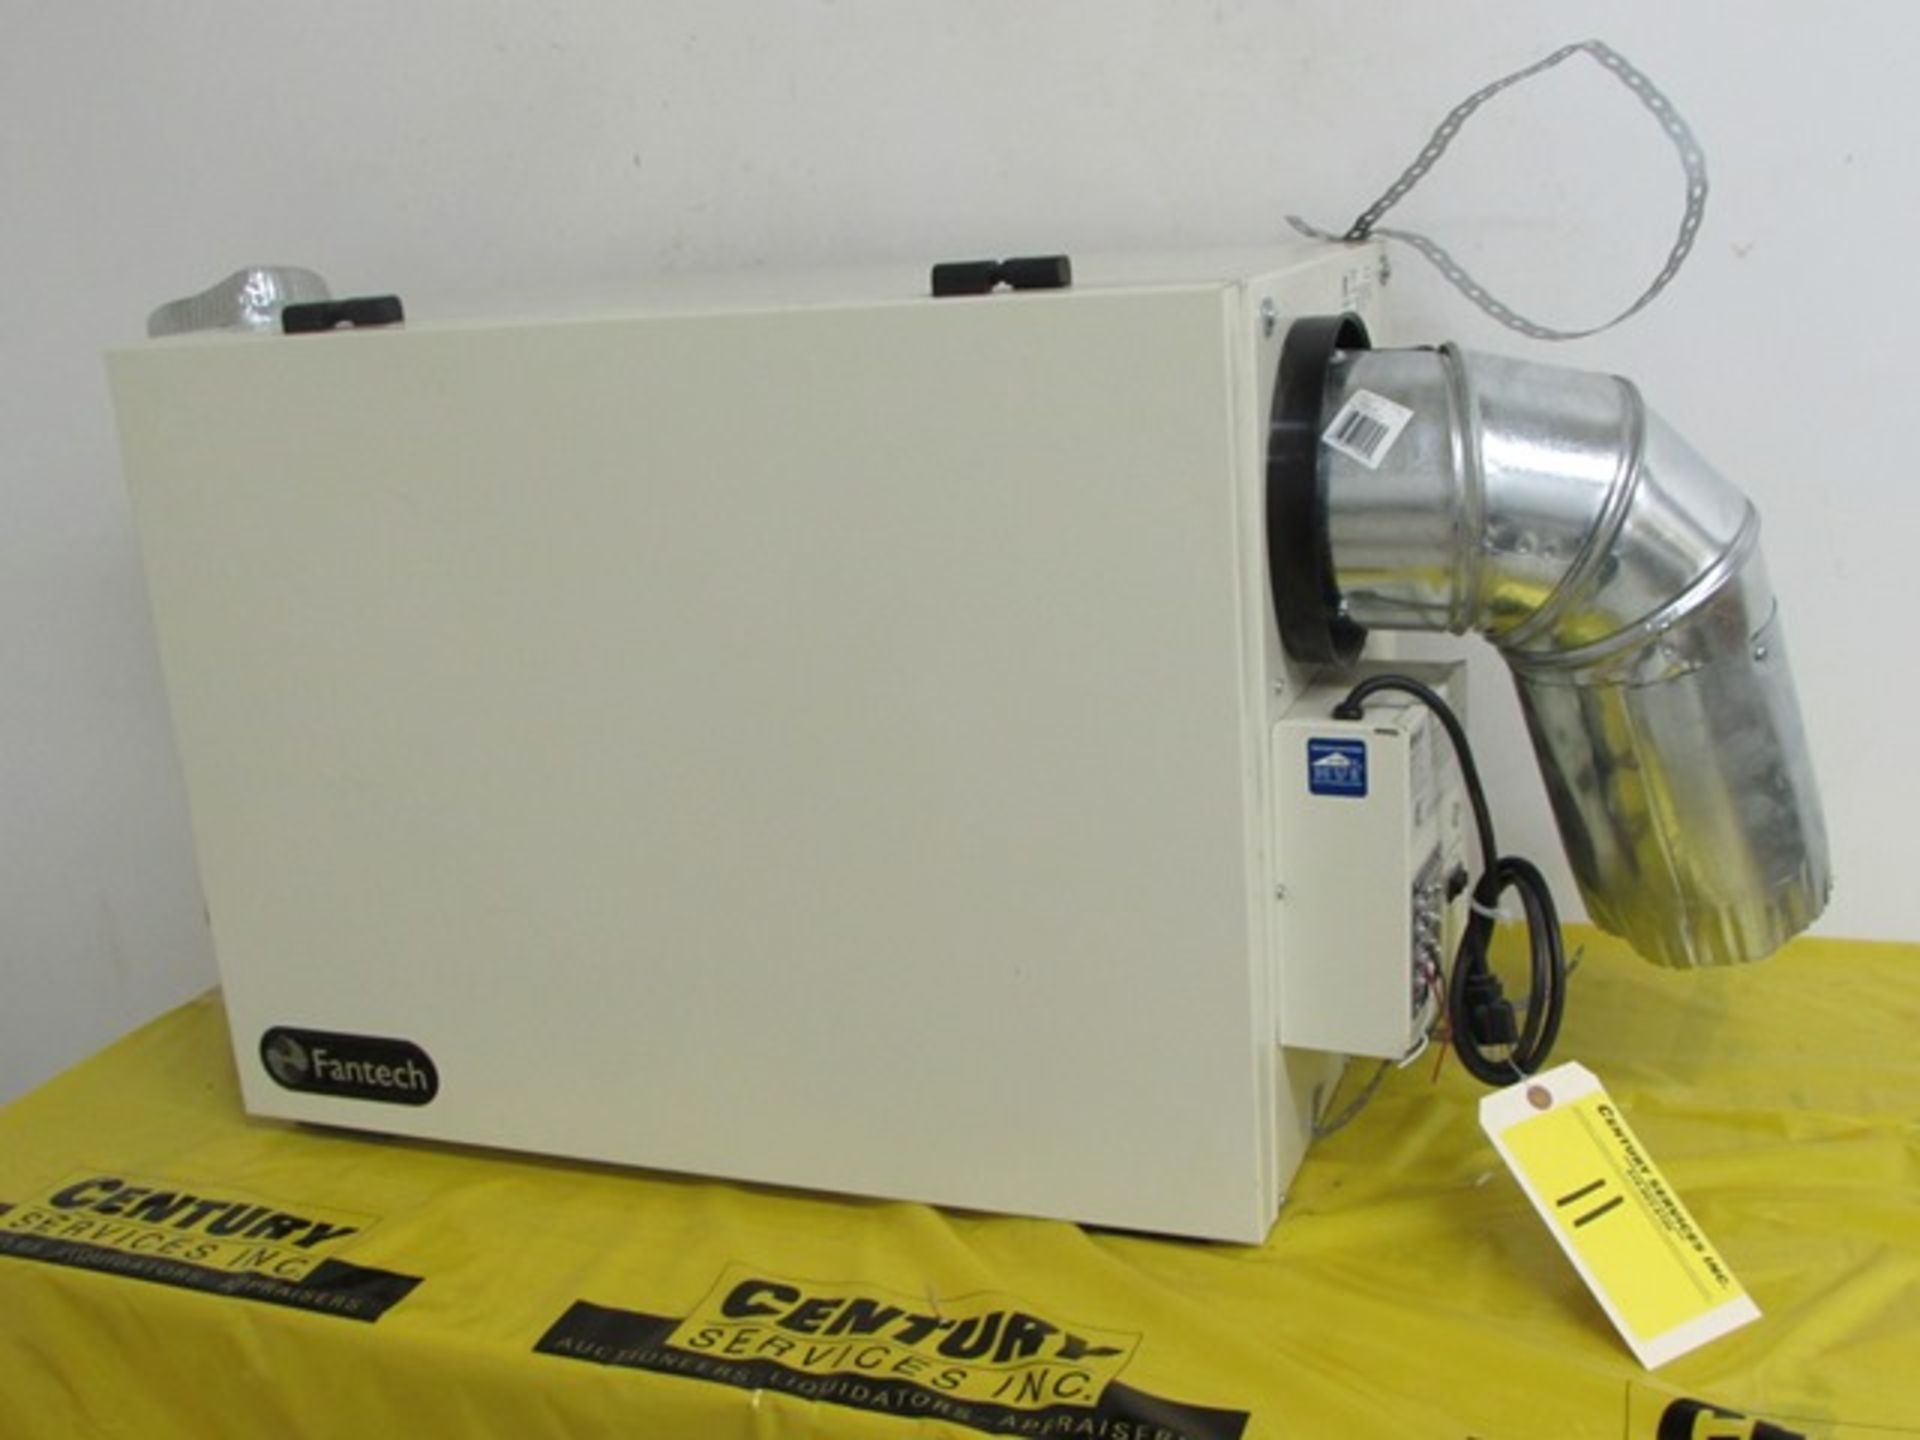 Fantech "SHR-2004" ventilation system c/w 2-sections ducting S/N - 1345 1293D